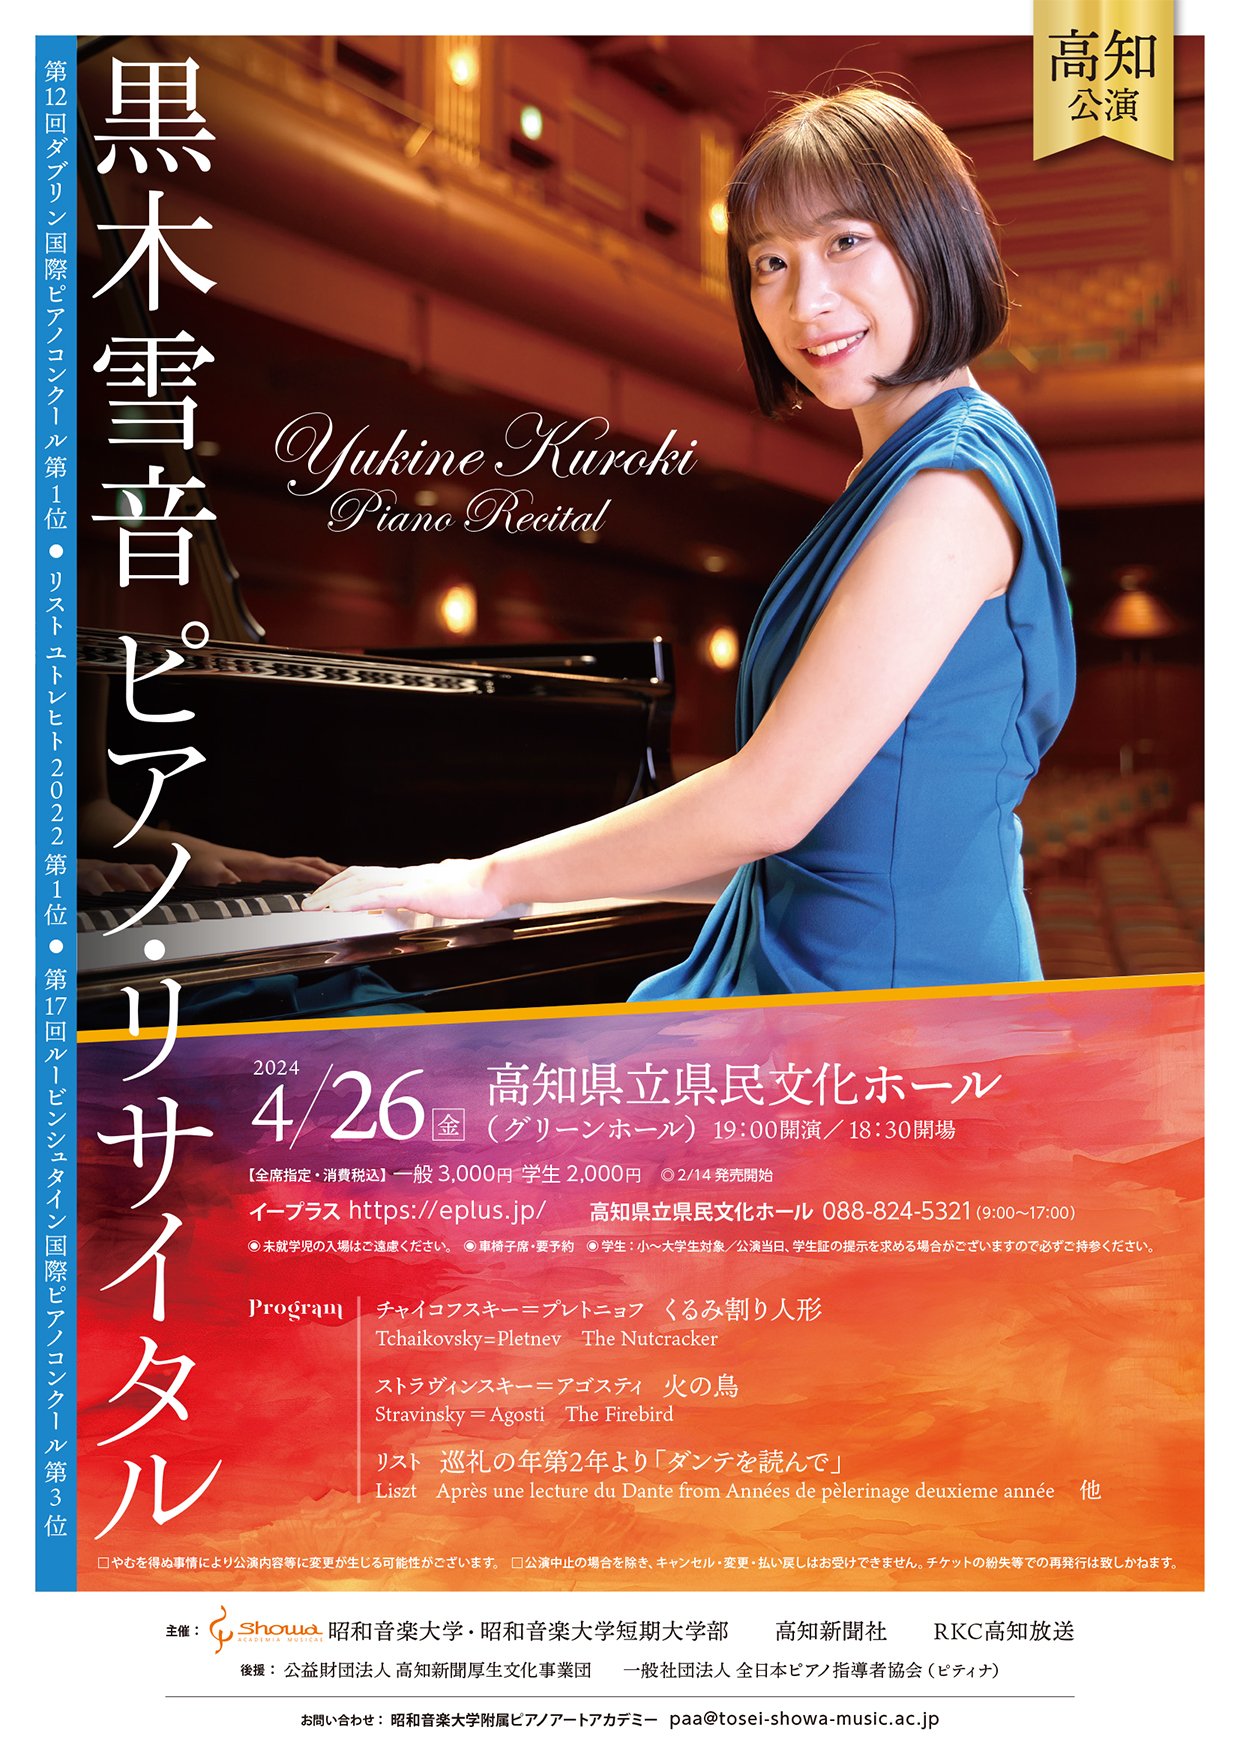 YukineKuroki PianoRecital  kochi_omote.jpg